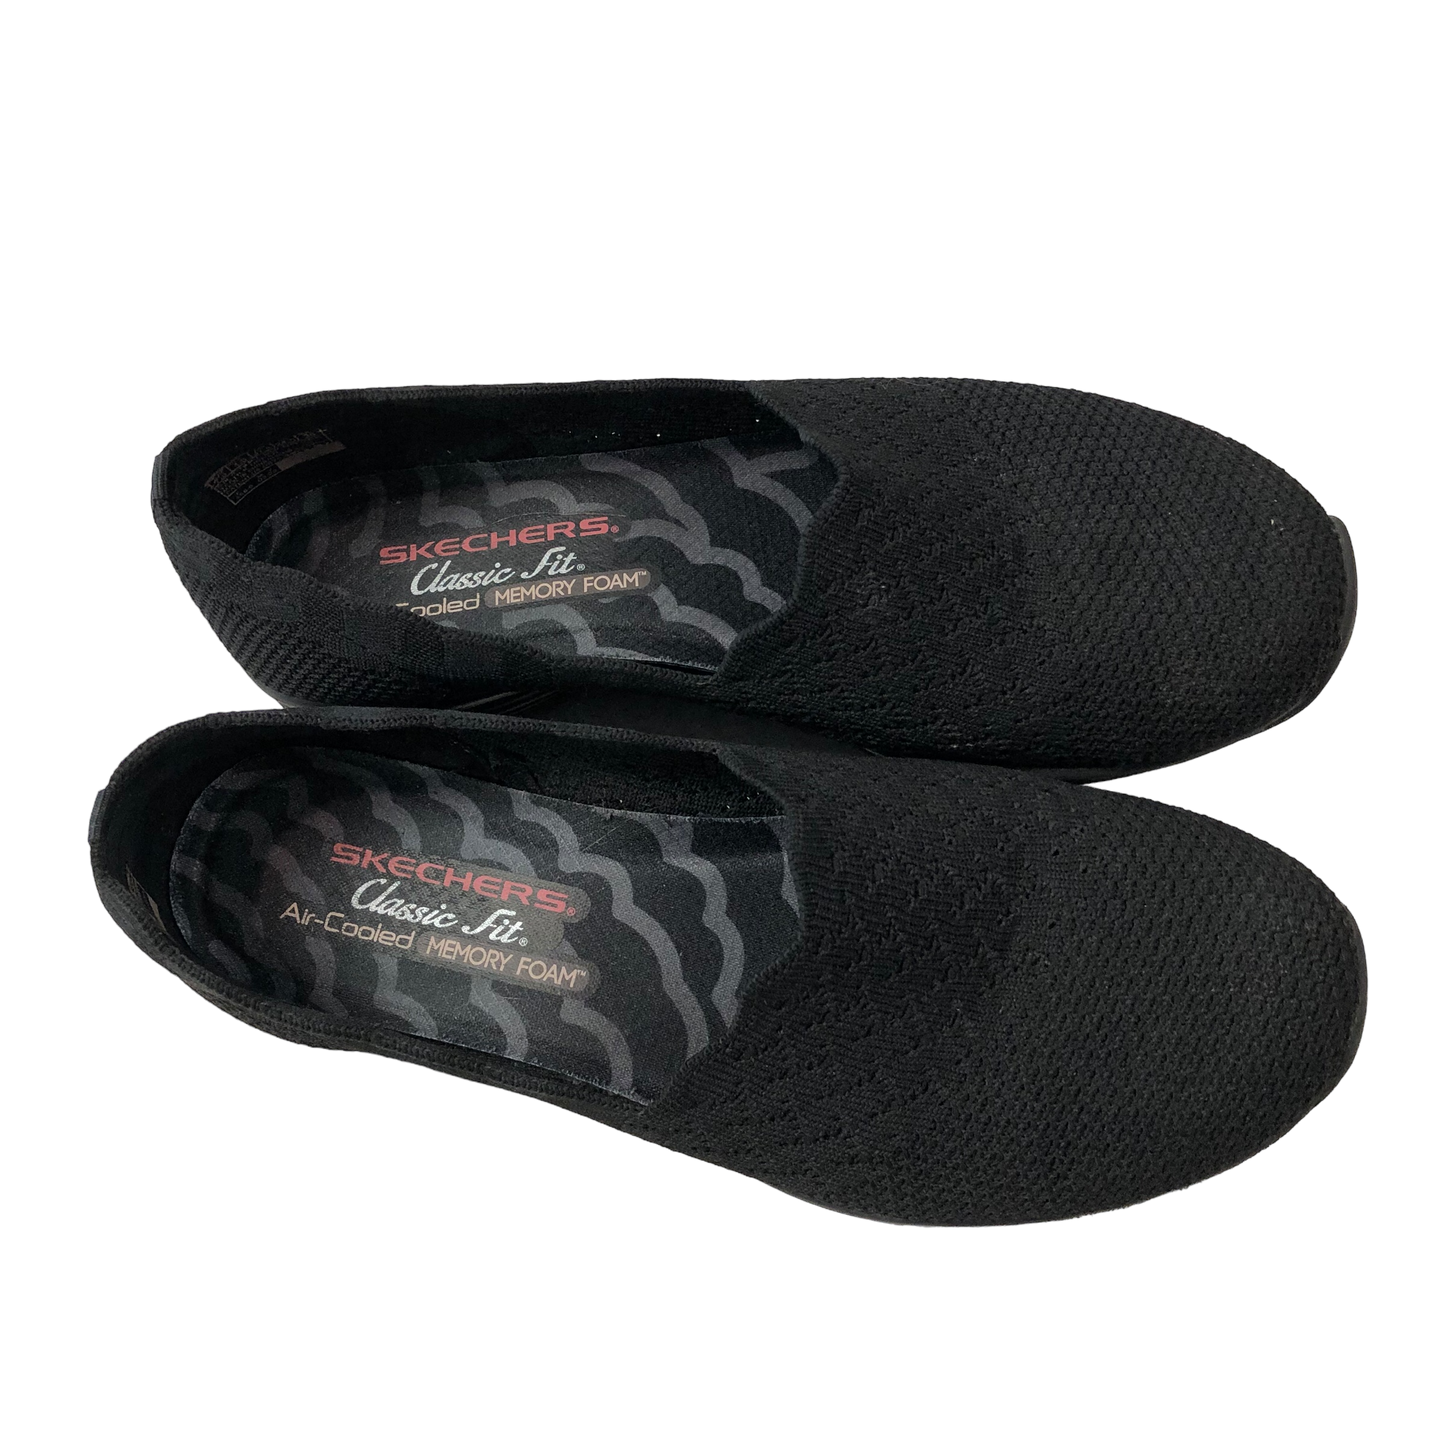 Black Shoes Flats Skechers, Size 7.5